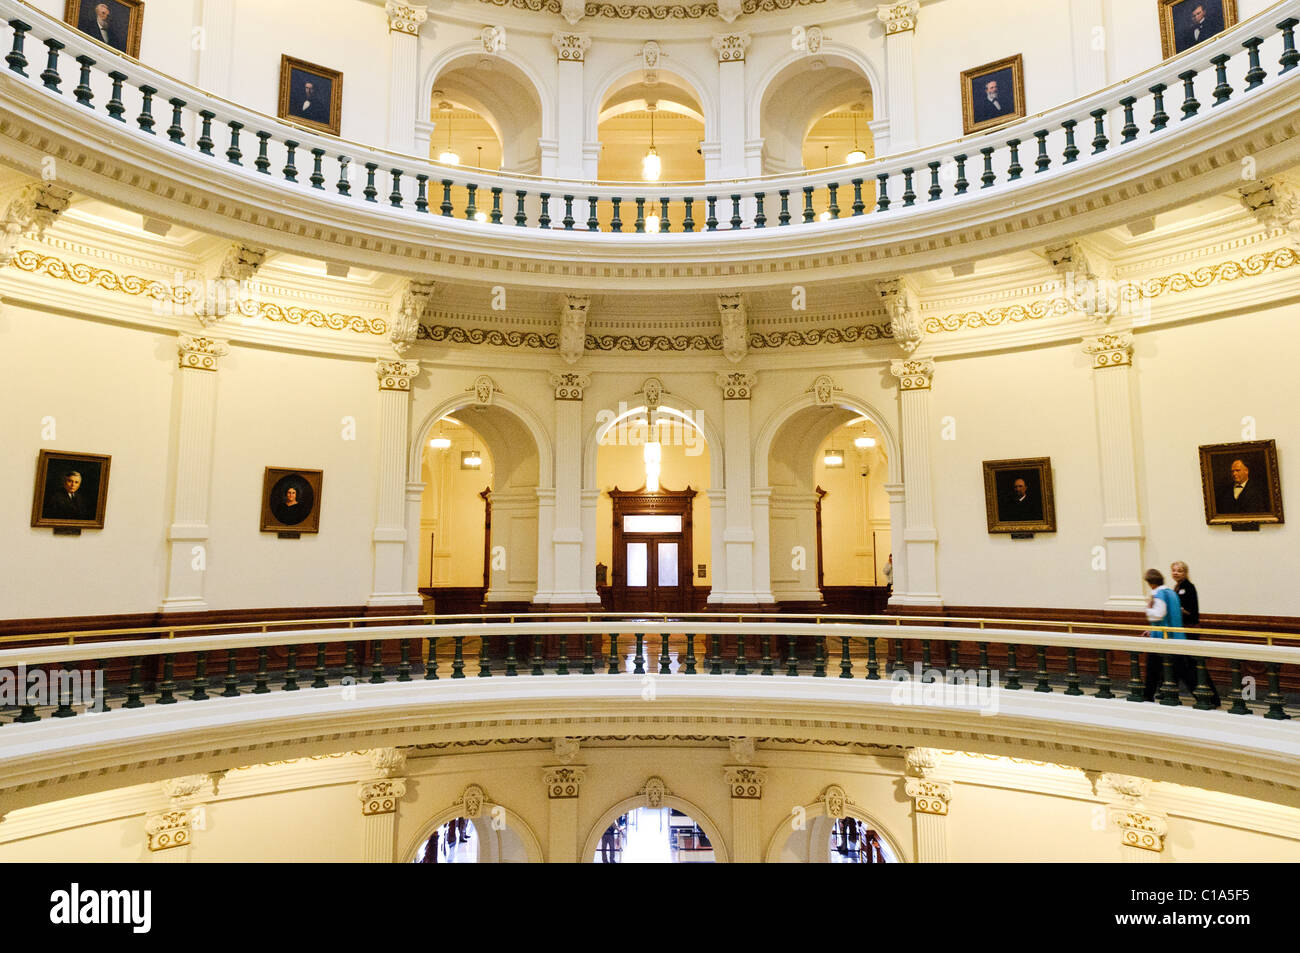 AUSTIN, Texas - Einige Etagen des Balkons mit Blick auf das Atrium unter der Kuppel des Texas State Capitol Building in Austin, Texas. Stockfoto